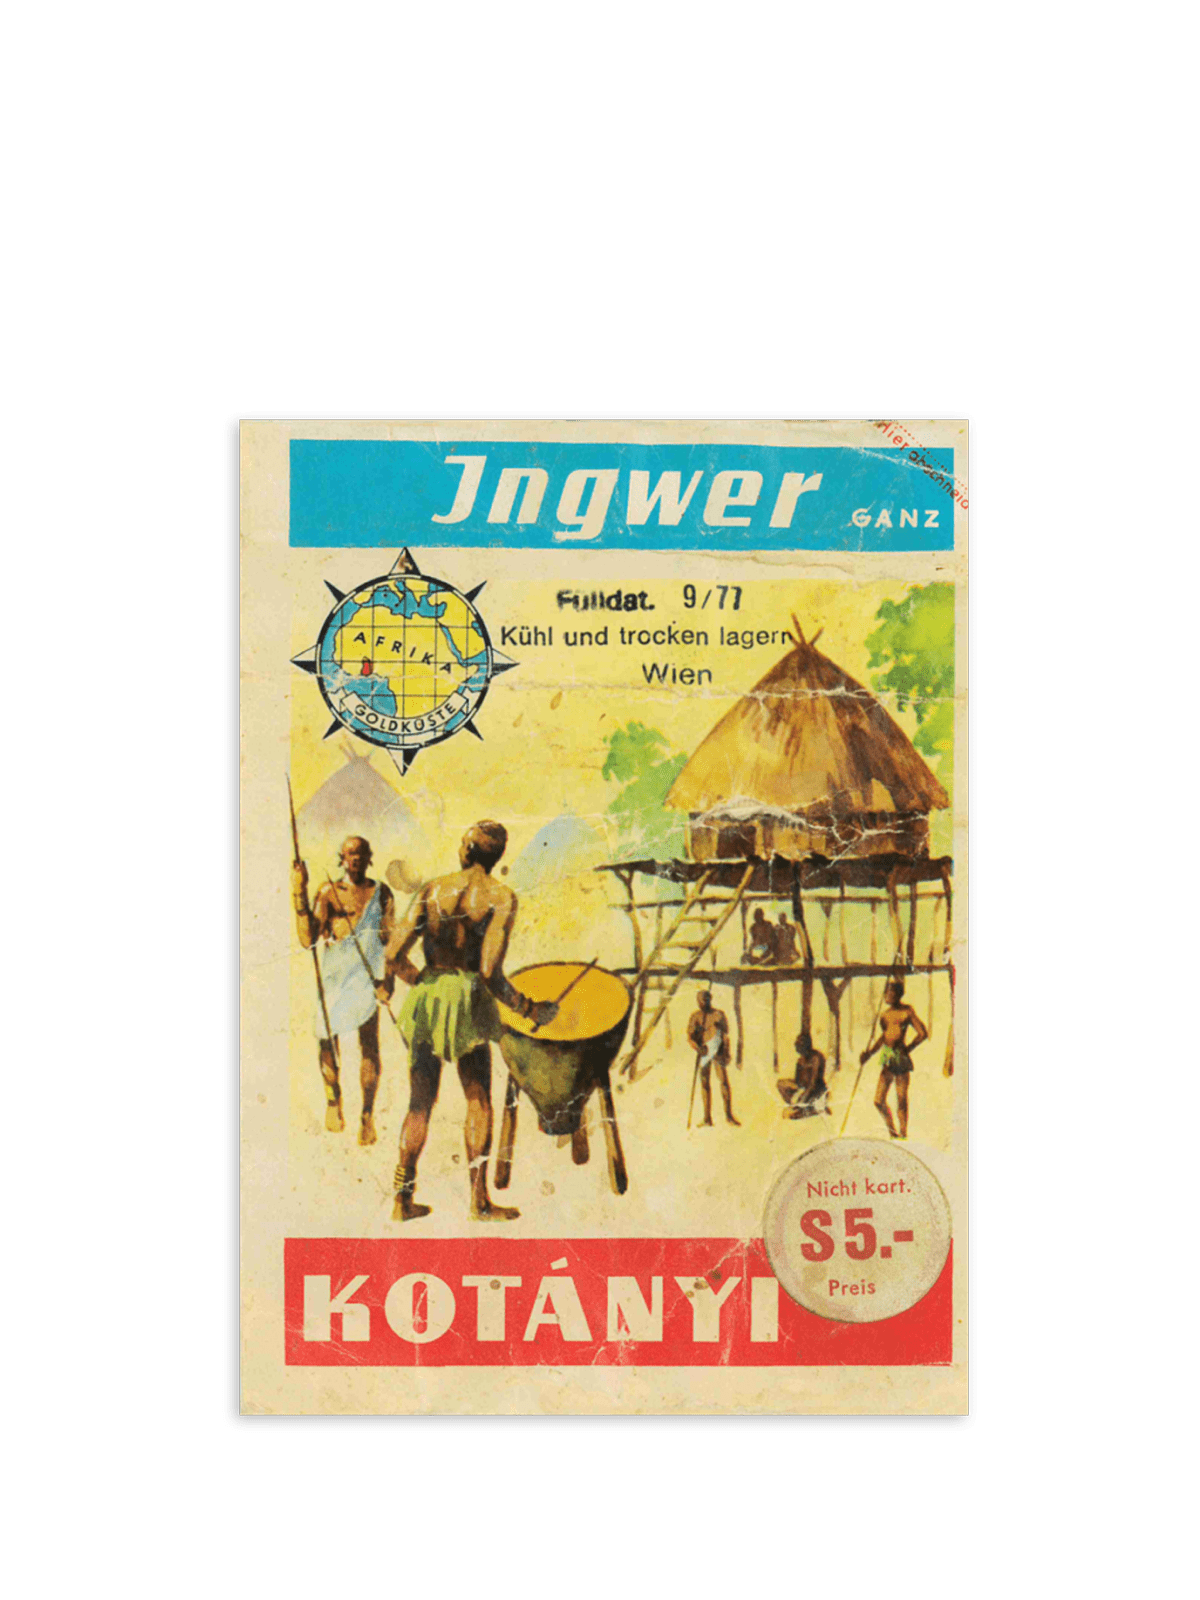 Un plic cu ghimbir Kotányi din ani anii ’70.